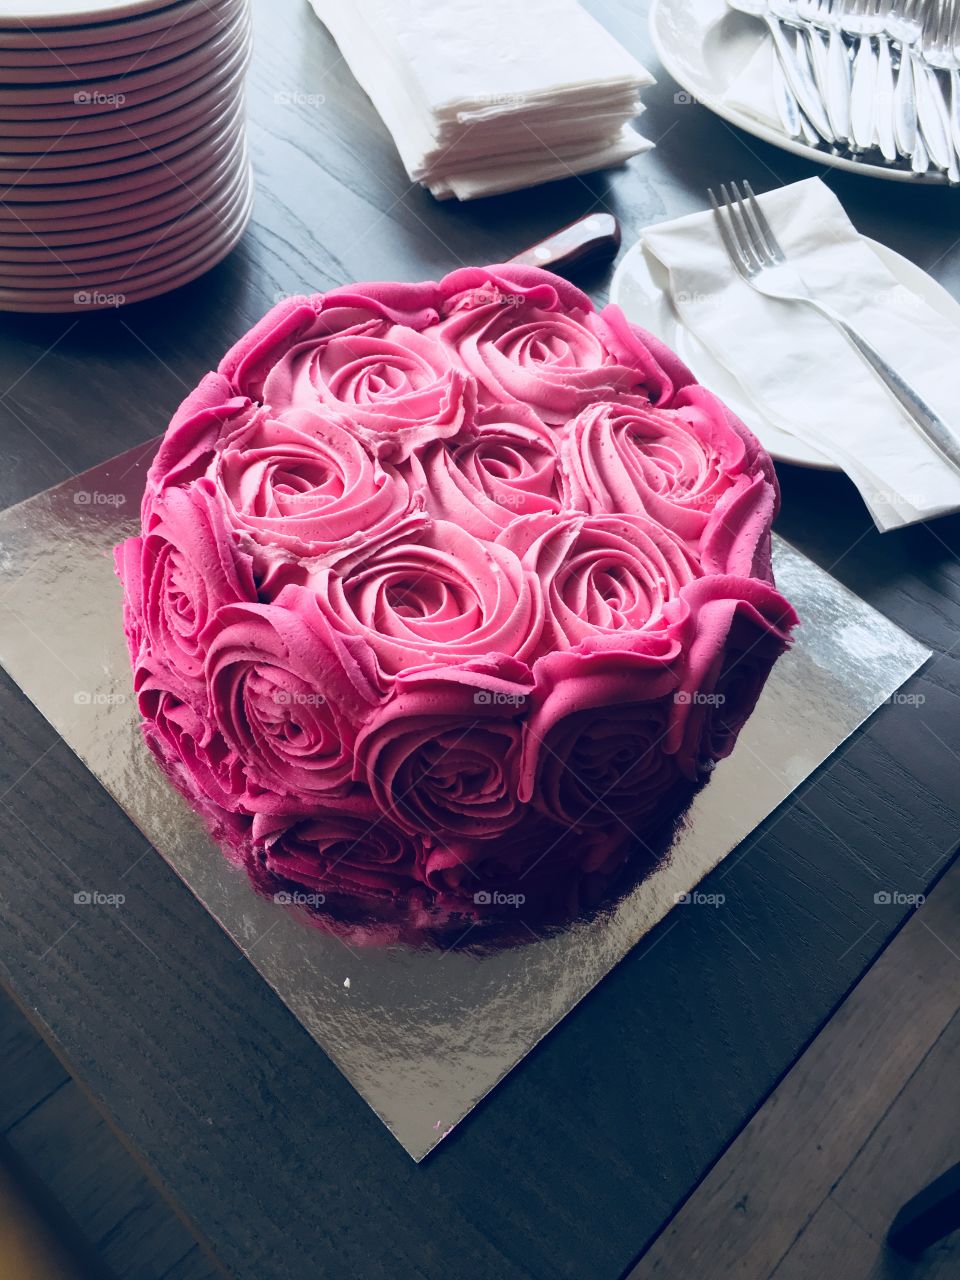 Stunning pink rose swirl party cake 